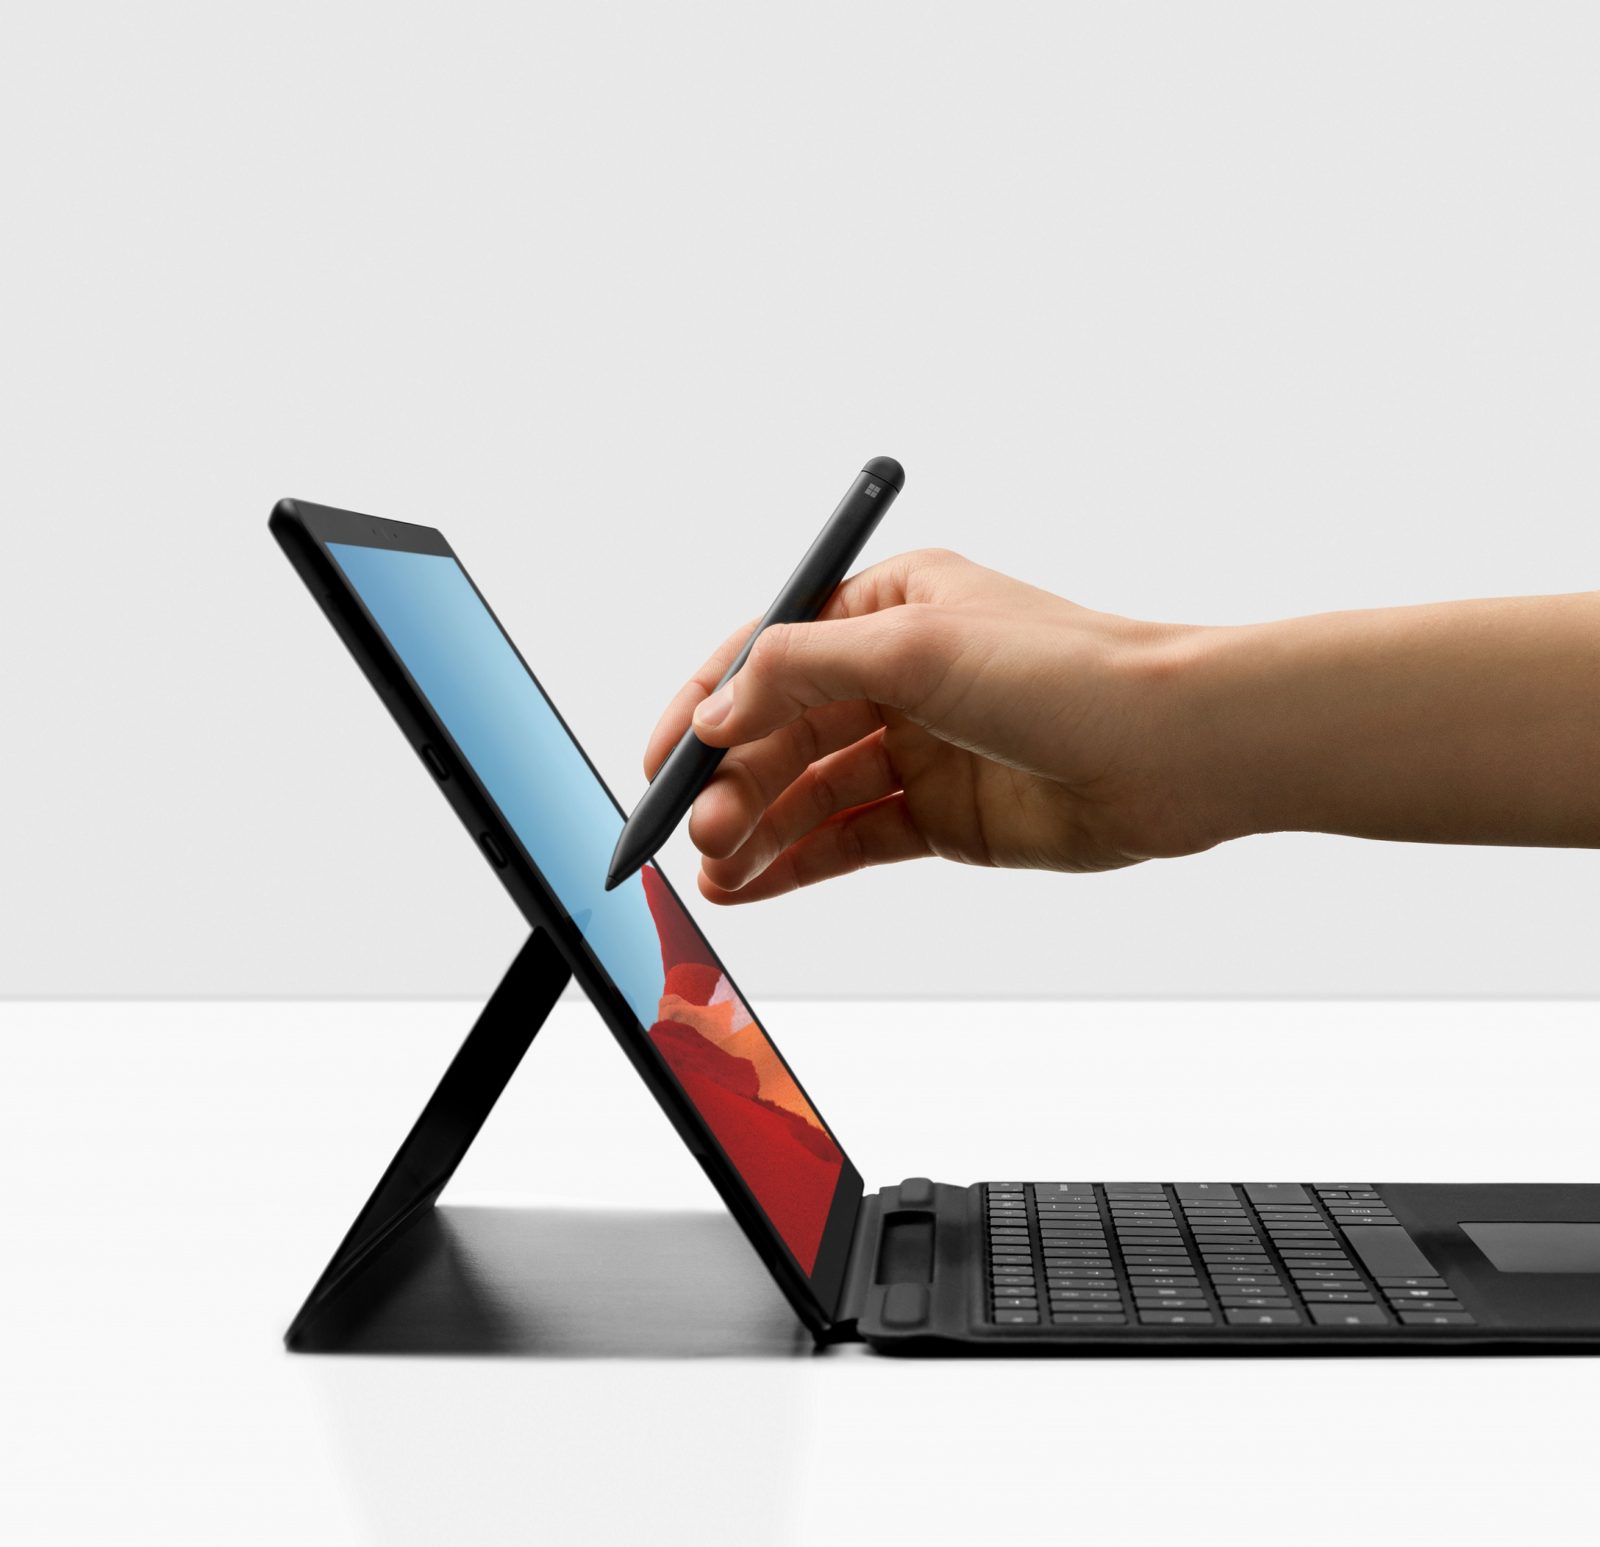 擁有全新SIM卡插槽設計和 LTE Advanced Pro 連線能力的Surface Pro X ，是 Surface Family 中是第一款搭載Arm架構處理器，同時支援 Nano SIM 與 eSIM，以及和Qualcomm共同合作的全新Microsoft SQ1處理器，將可全方位滿足輕辦公、遠距辦公族群，提供高效行動生產力